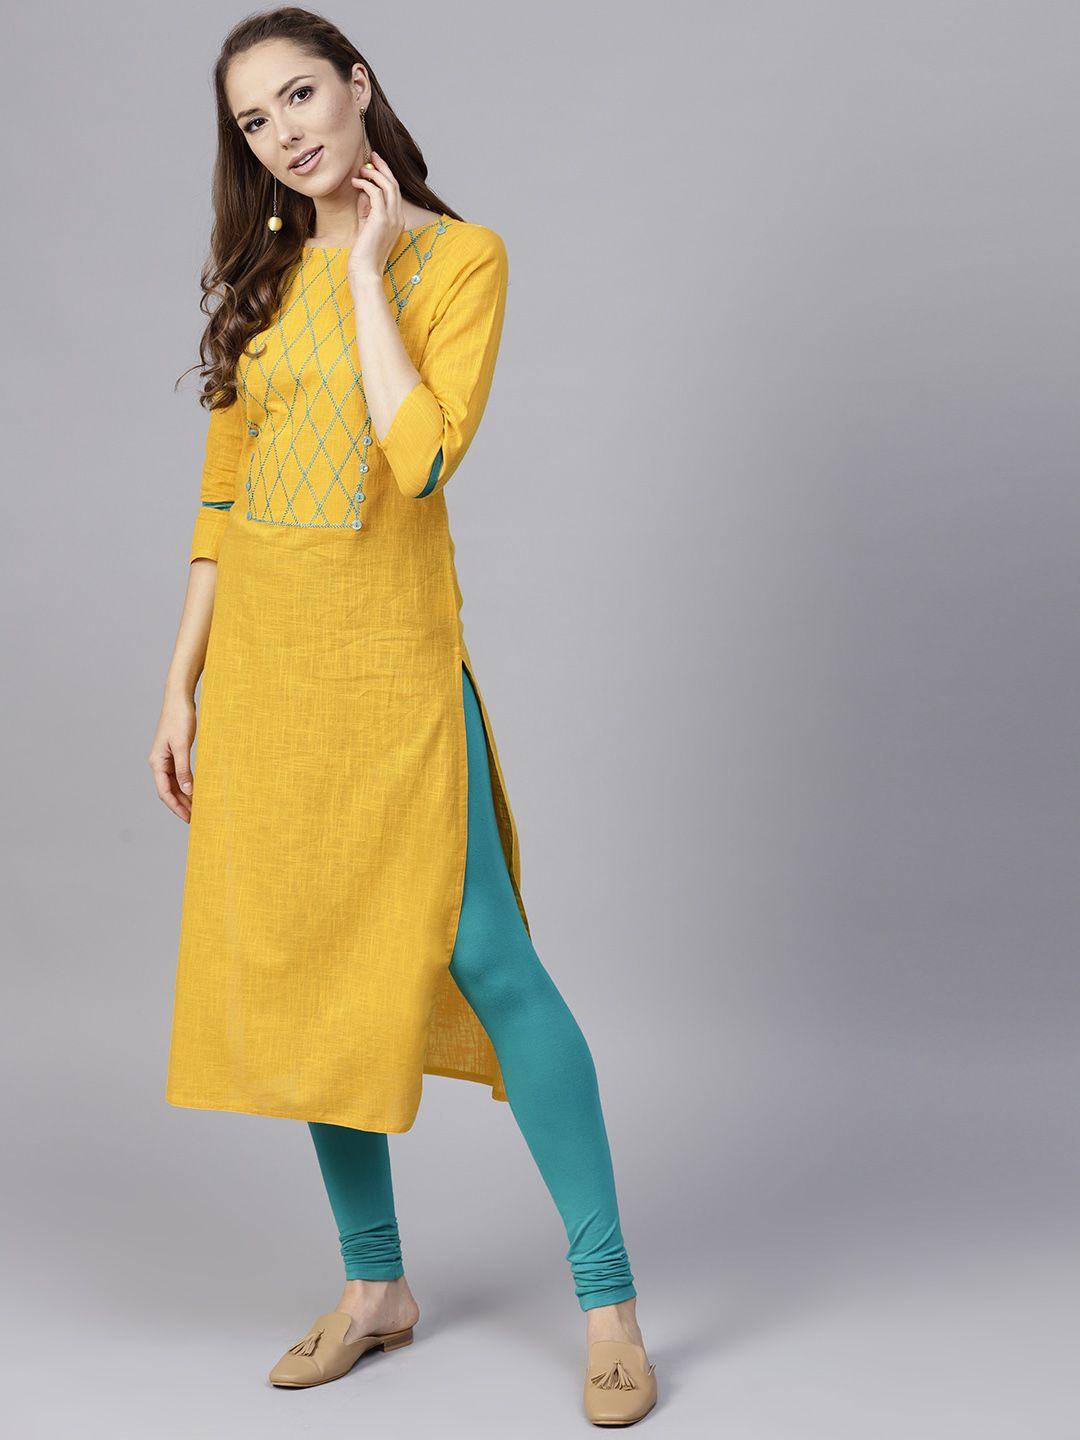 jaipur-kurti-women-yellow-yoke-design-straight-kurta